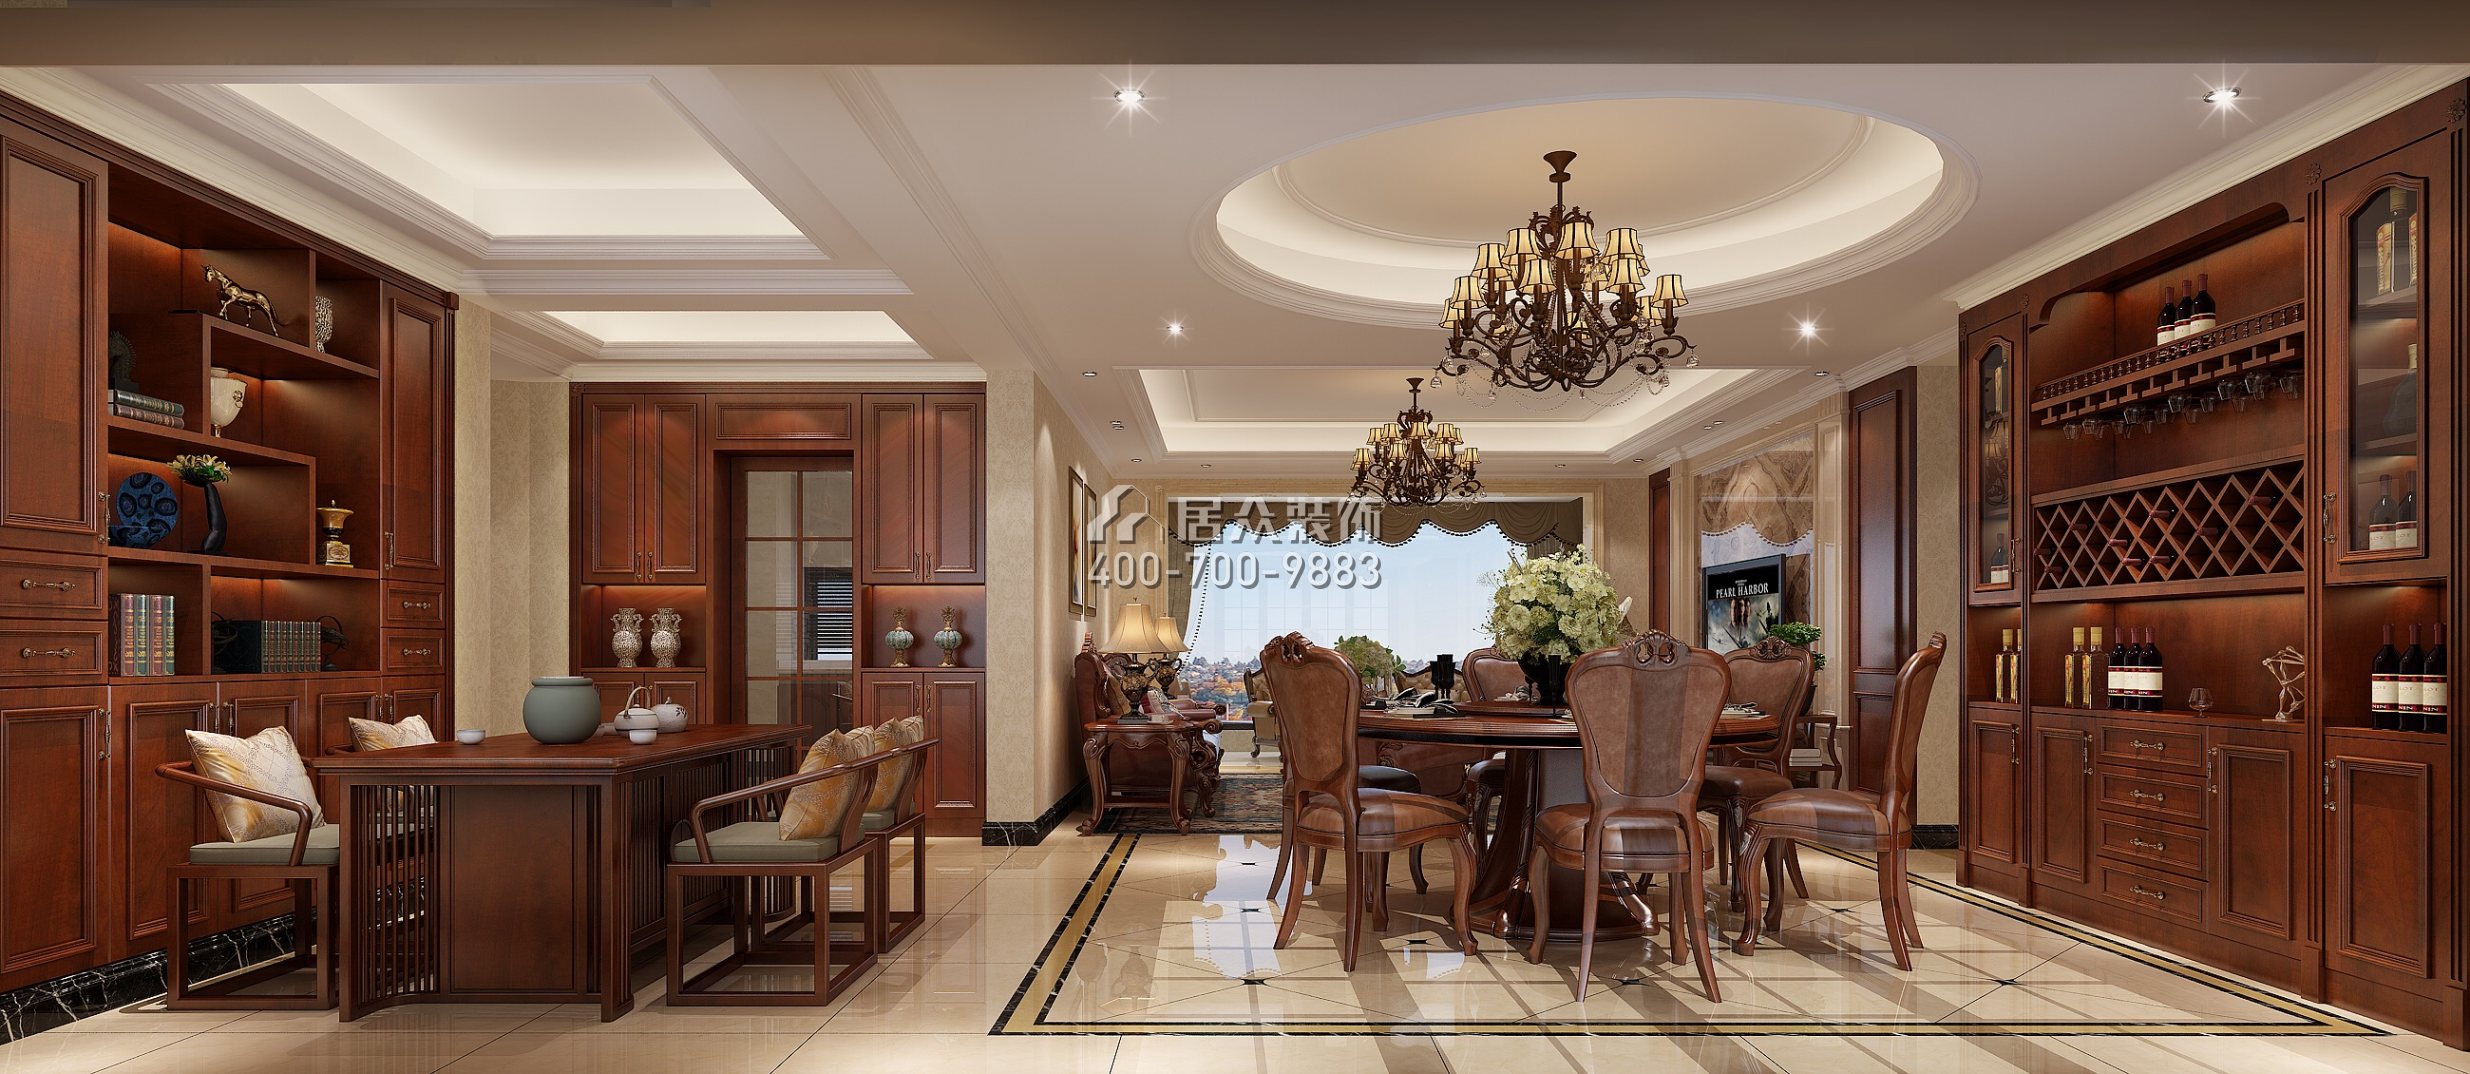 星河丹堤180平方米歐式風格平層戶型餐廳裝修效果圖